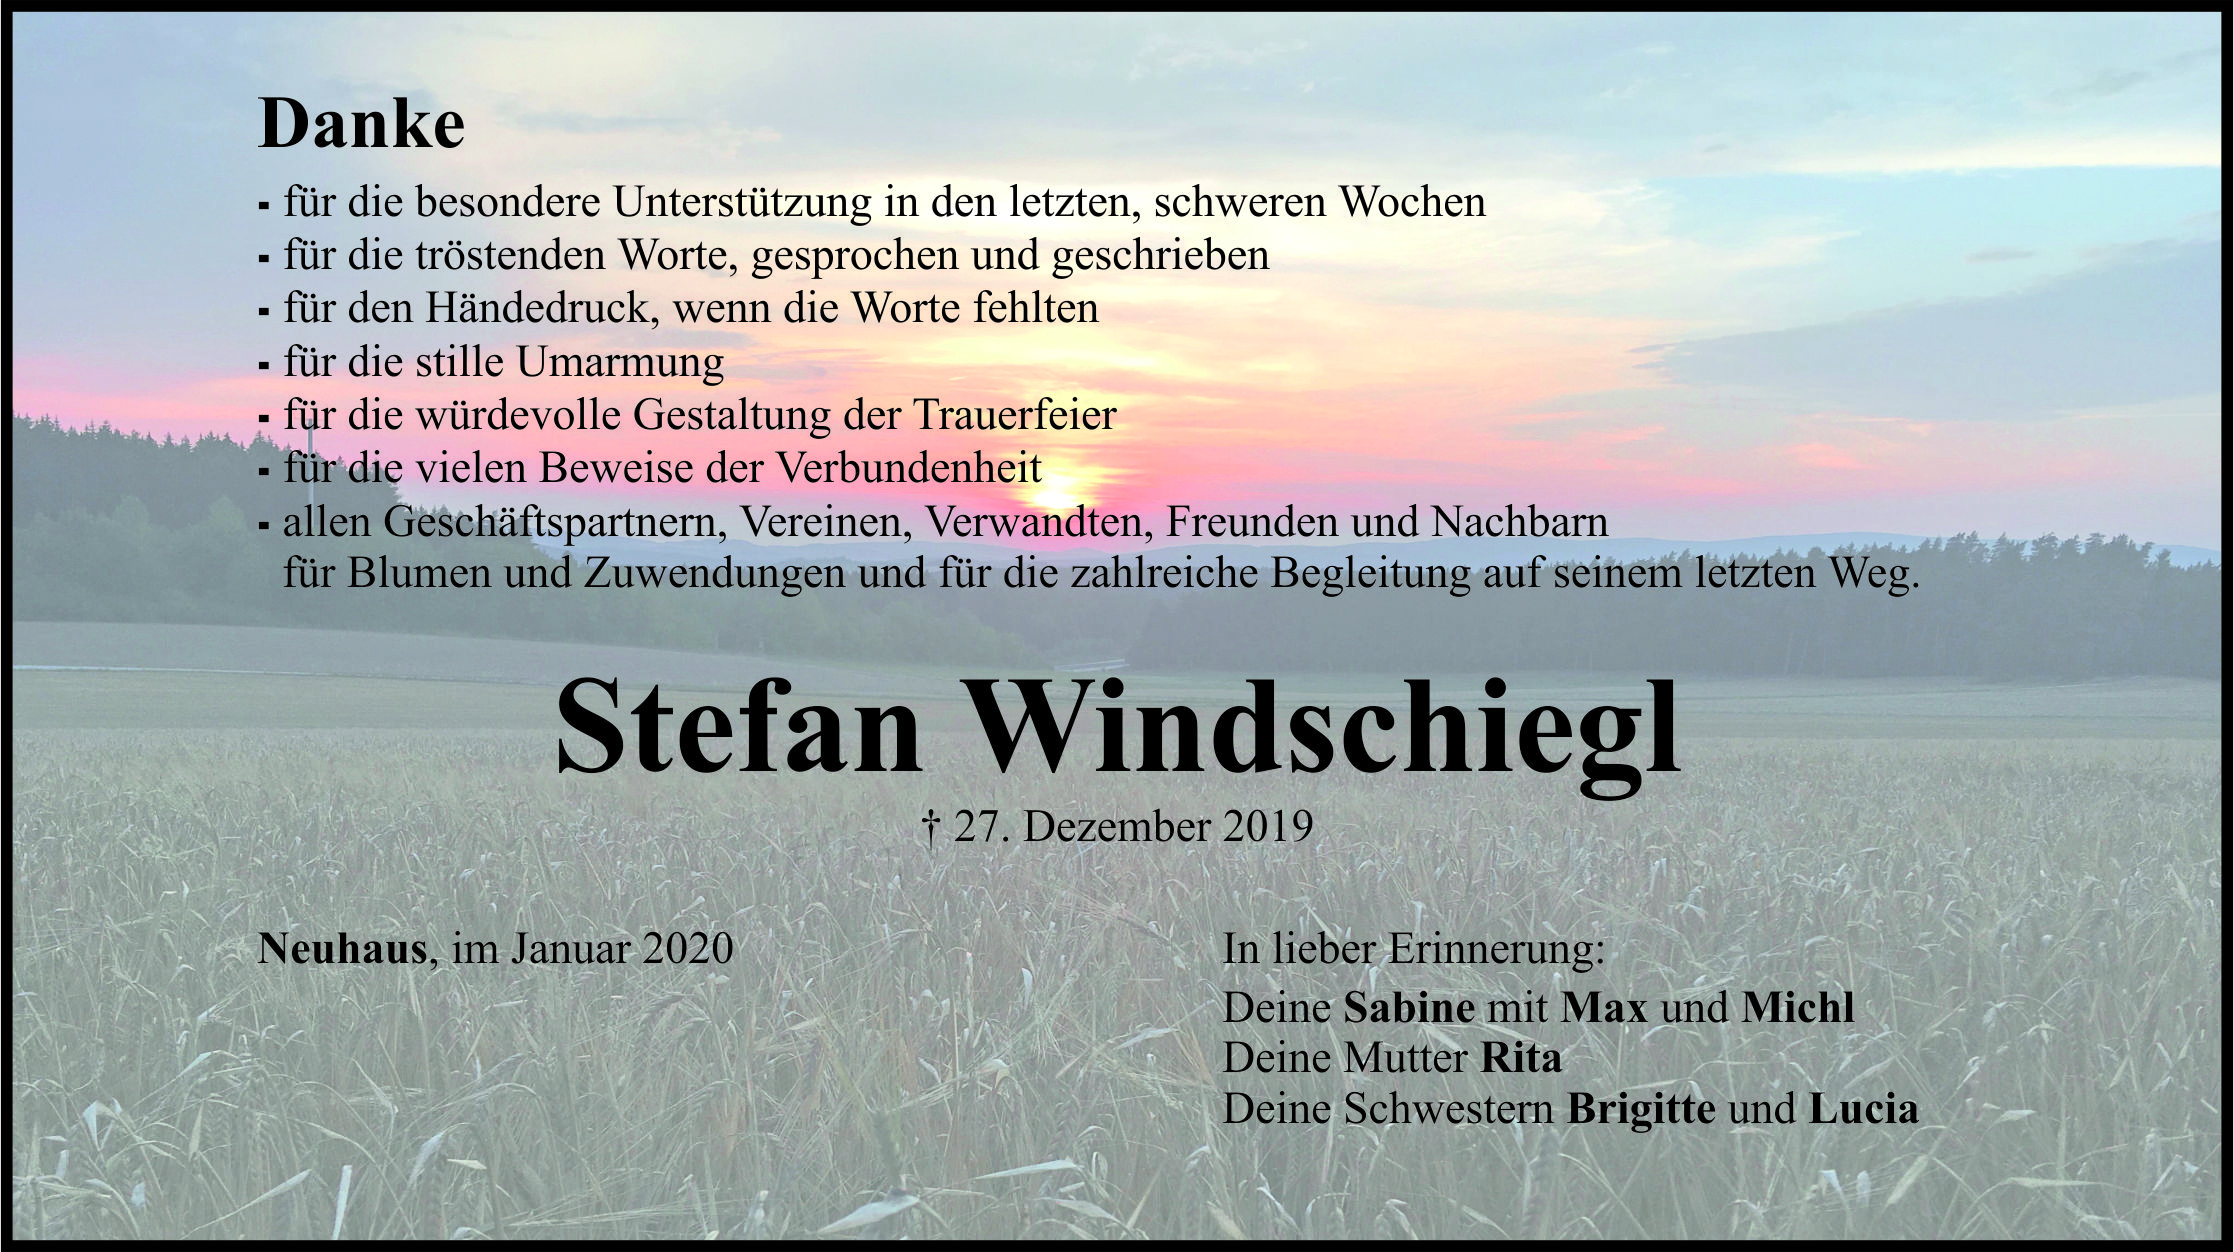 Danksagung Stefan Windschiegl, Neuhaus